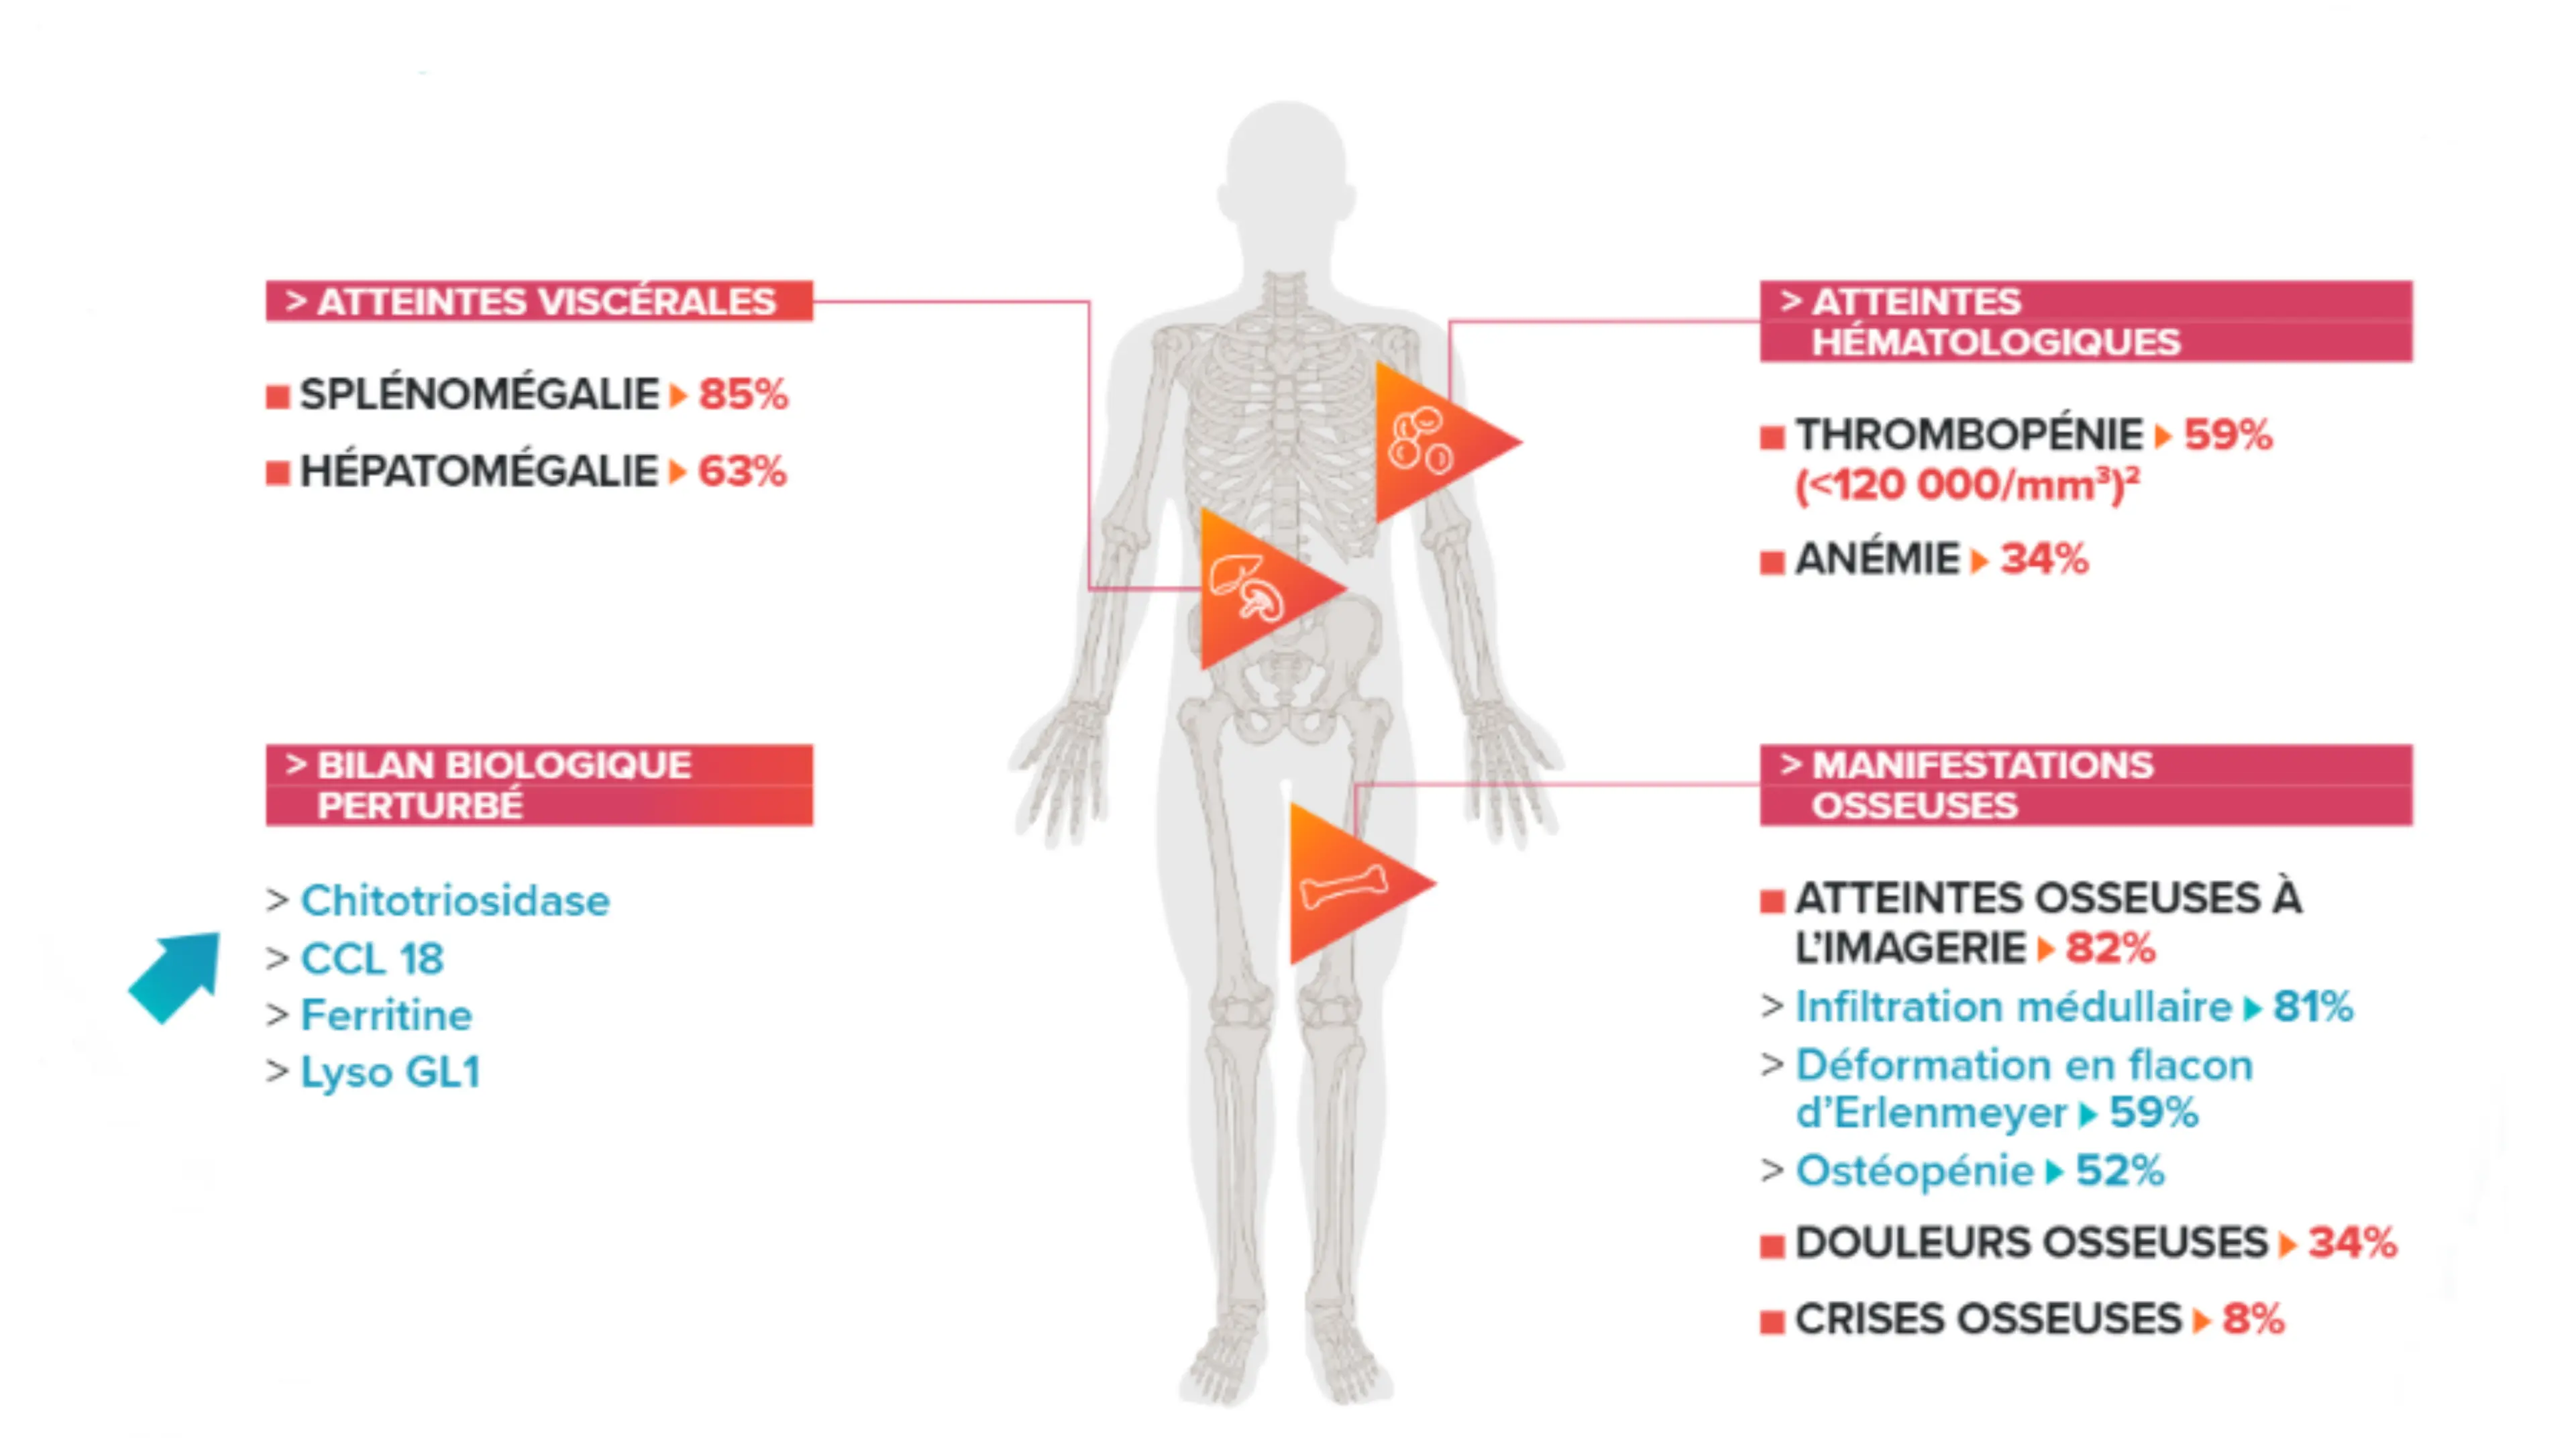 Schéma d’un humanoïde récapitulant les principaux symptômes évocateurs de la maladie de Gaucher :  Splénomégalie, Hépatomégal